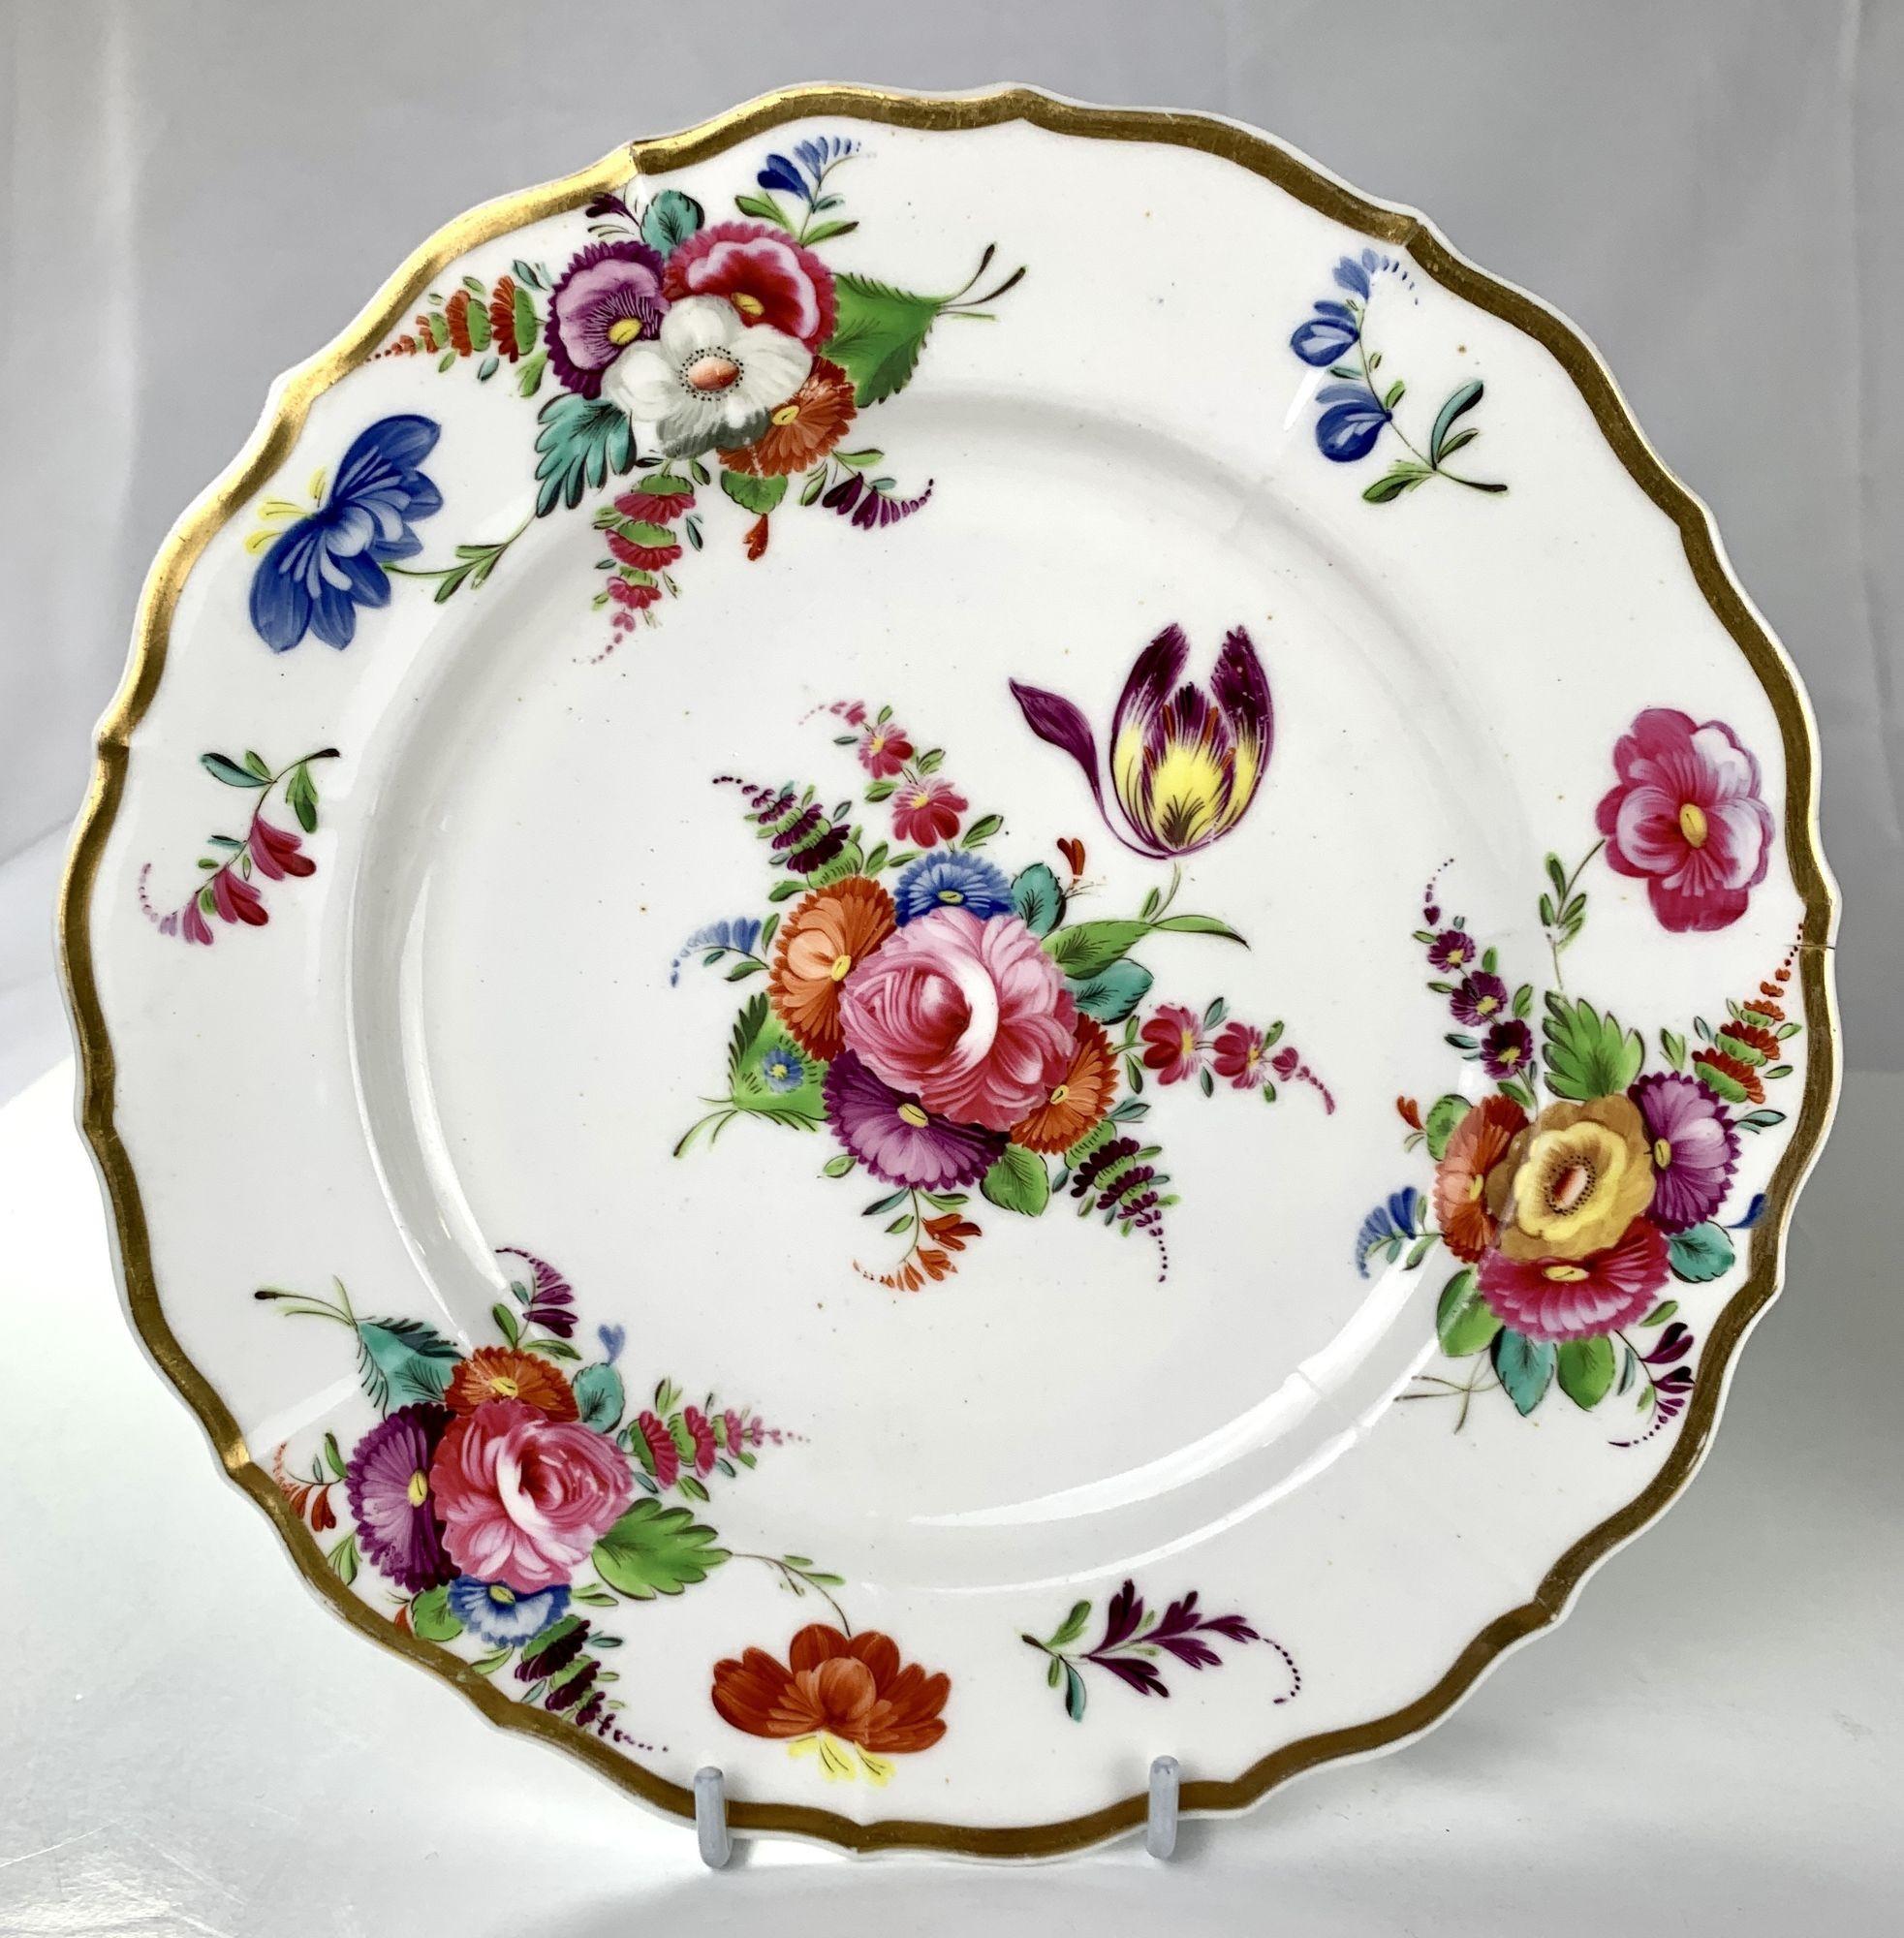 Cette paire de plats a été peinte à la main à Coalport, en Angleterre, au début du XIXe siècle. 
Les couleurs sont fabuleuses ; nous voyons du rose, du violet, de l'orange, du bleu, du vert, du jaune et du turquoise.
Les fleurs sont omniprésentes :